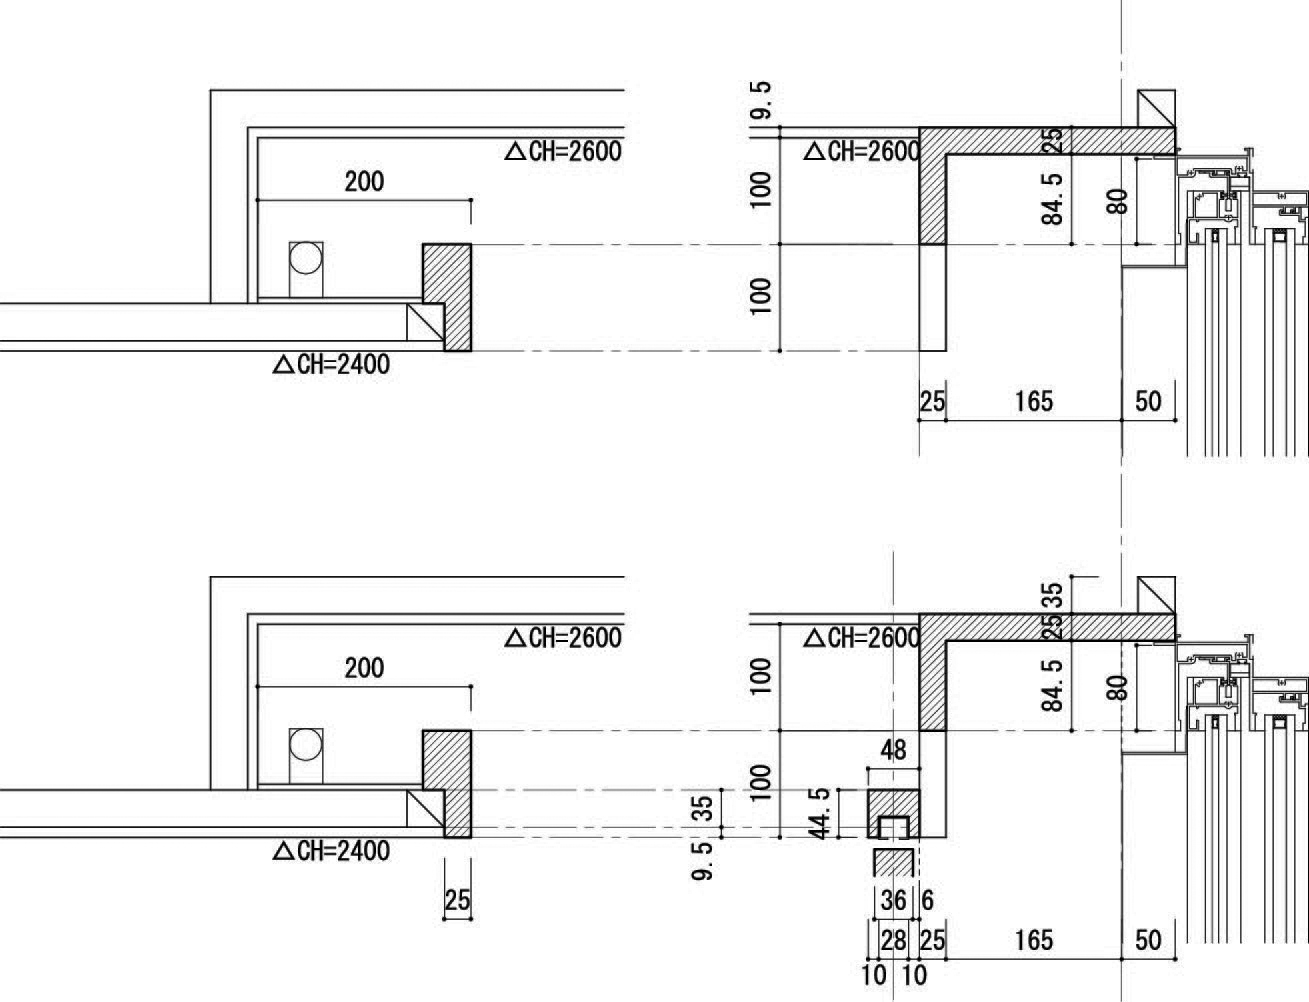 カーテンボックス、ブラインド、ロールスクリーン | 天井 | カテゴリー内一覧 | 建築設計研究所